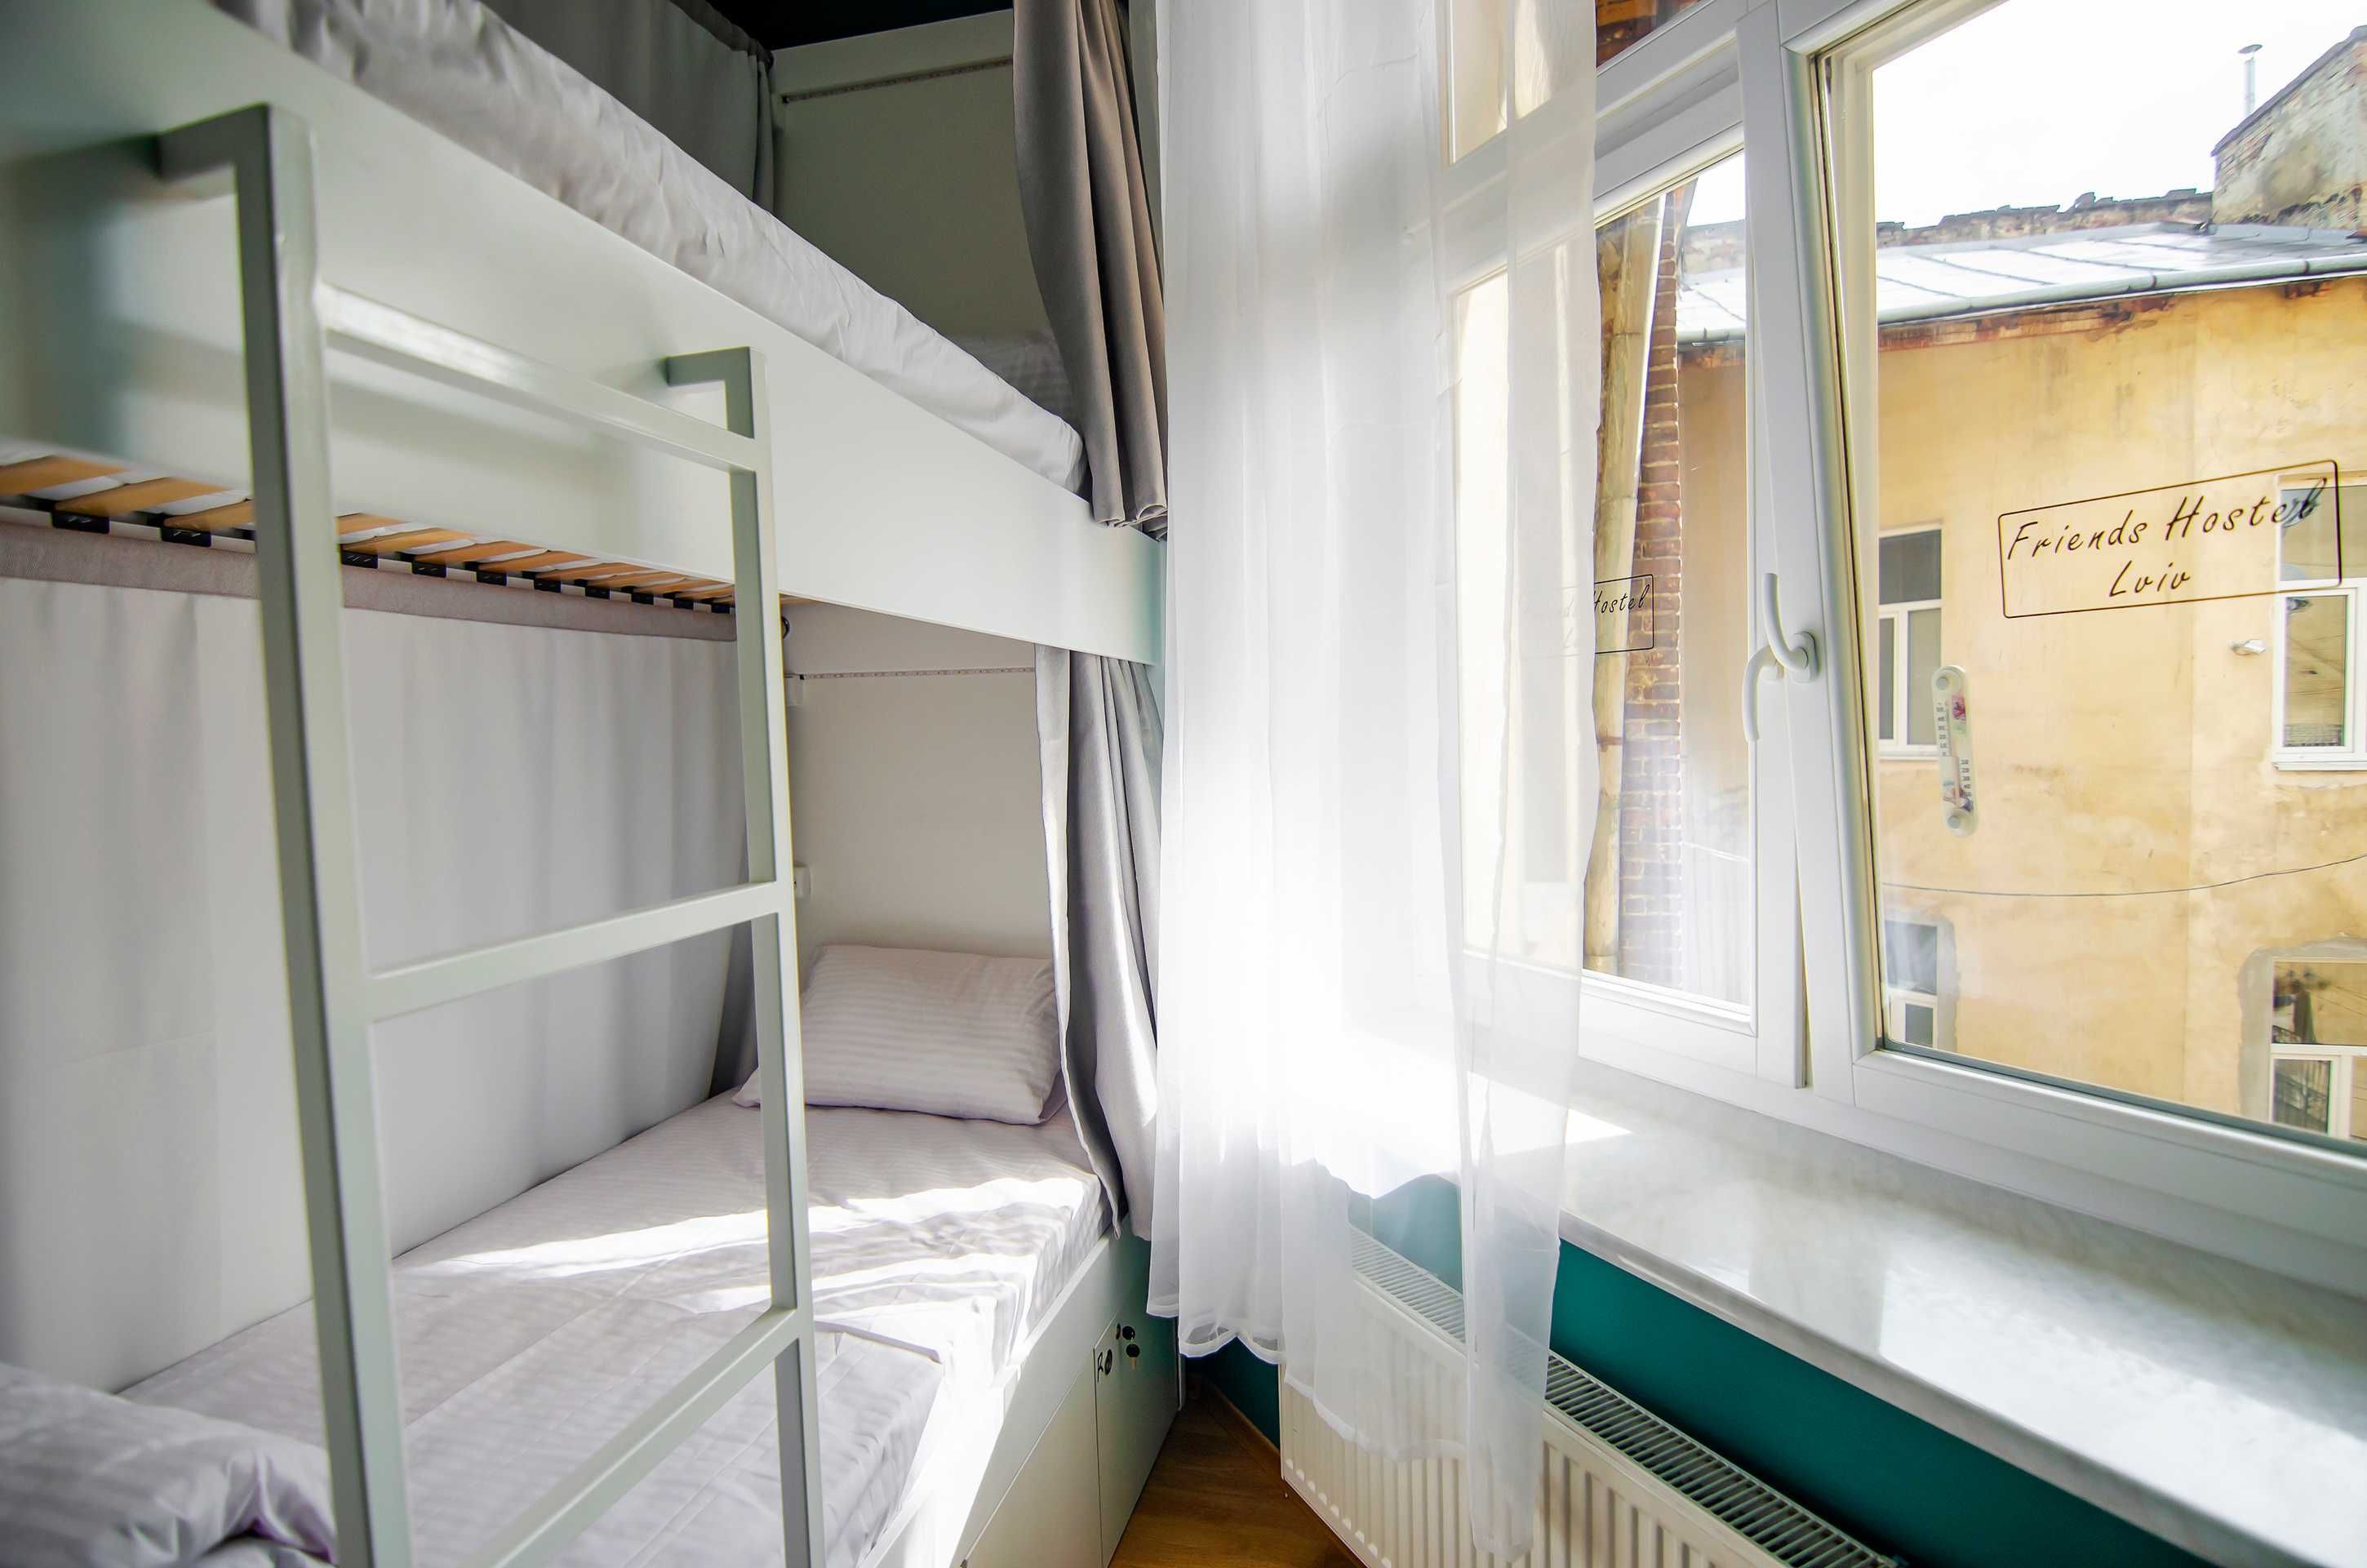 Friends Hostel Lviv Rustaveli st. - Приватні кімнати в хостелі